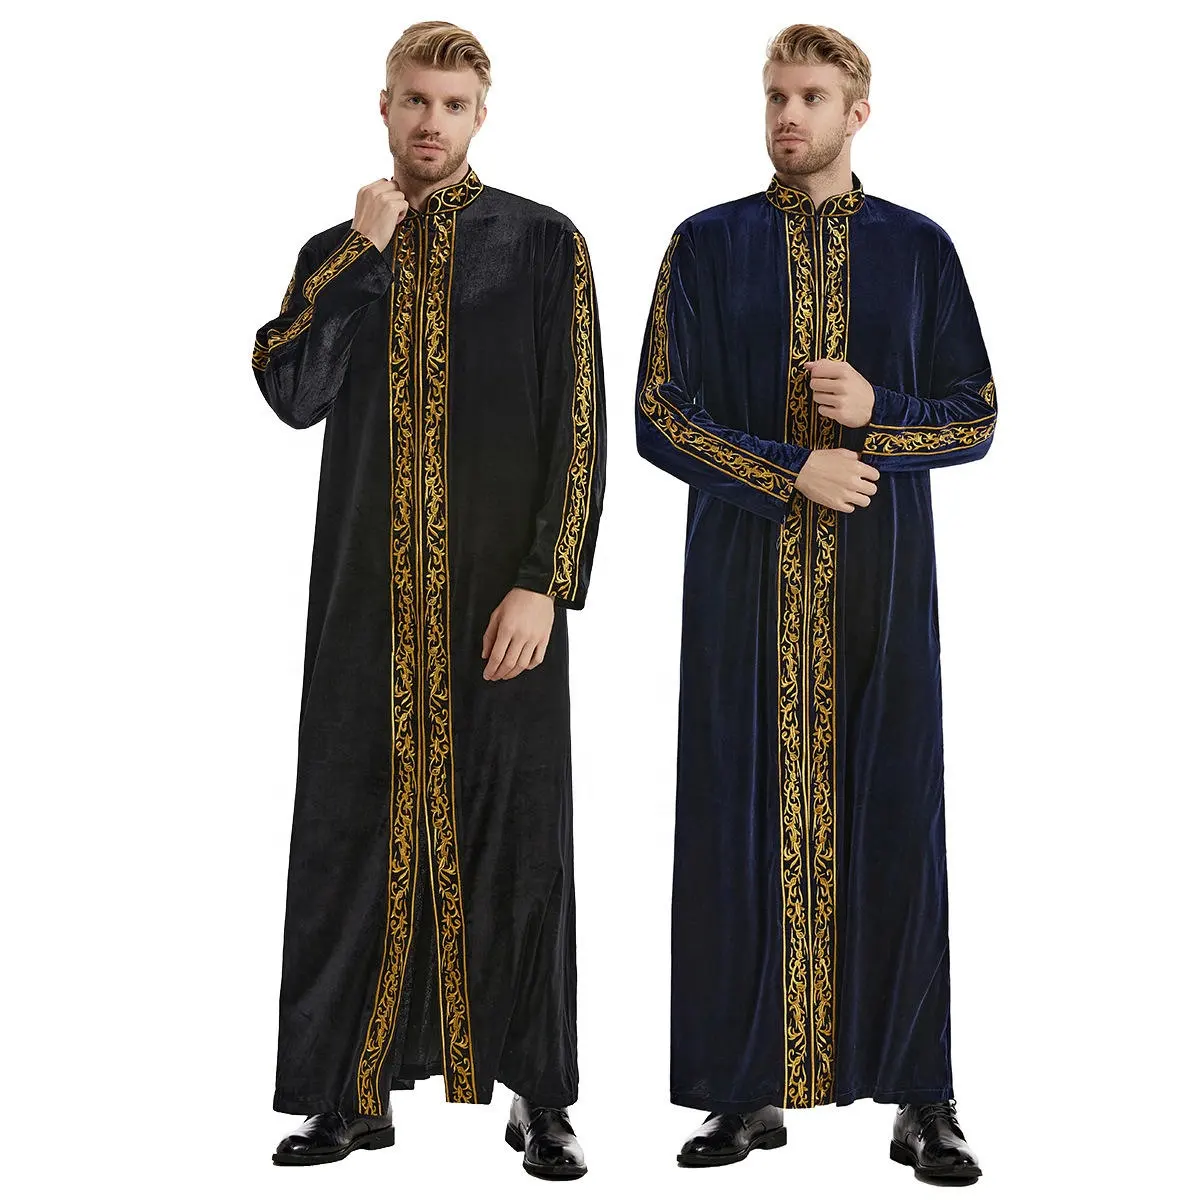 अरब वस्त्र नरम कढ़ाई लंबी आस्तीन लंबे गाउन कपड़े पुरुष मुस्लिम पोशाक पुरुष काफ्तान अबाया इस्लामी शरद ऋतु के लिए